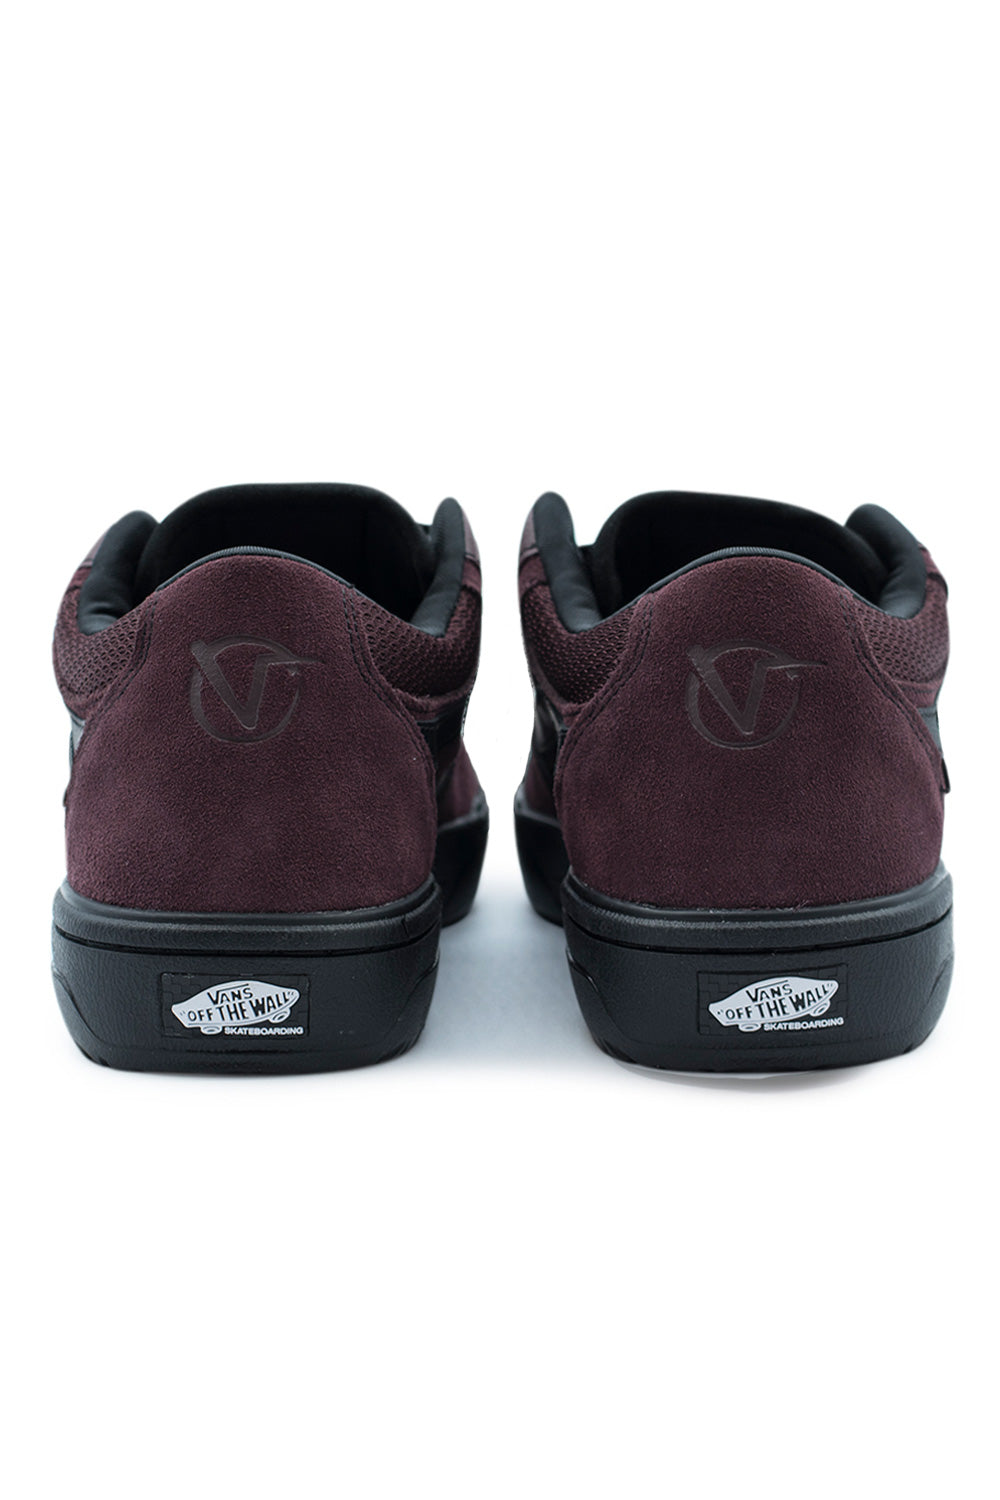 Vans Rowan 2 VCU (Skate) Shoe Chocolate / Black - BONKERS